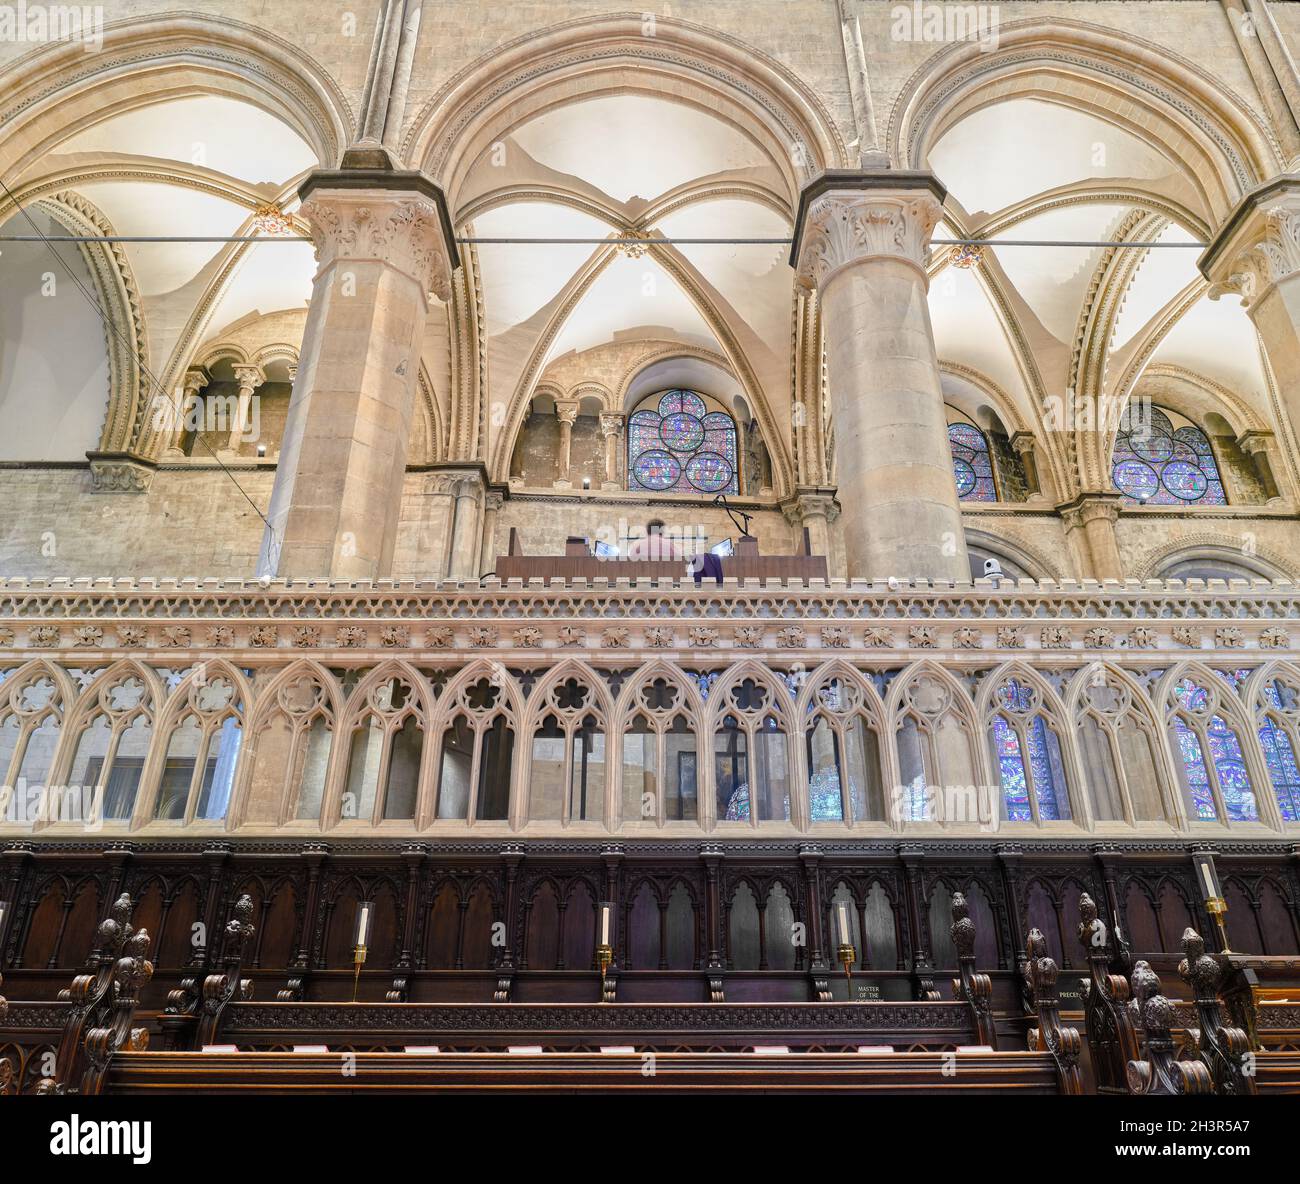 Bänke und Orgelloft im Chor der Kathedrale von Canterbury, England. Stockfoto